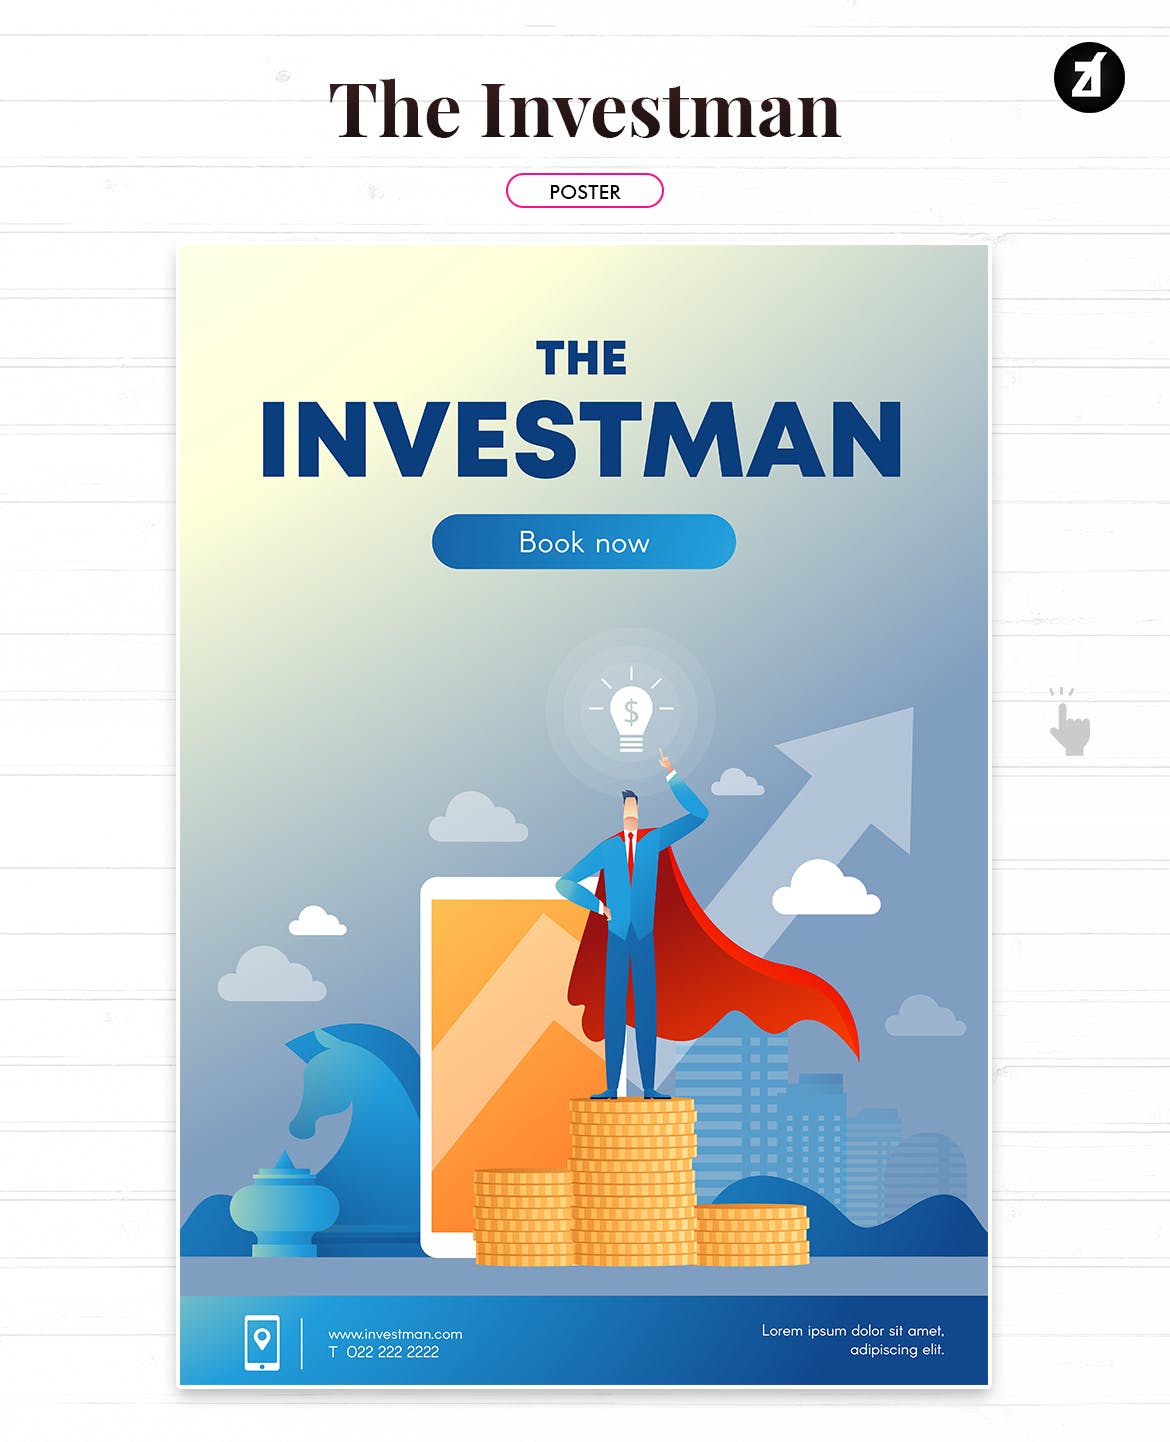 投资者主题矢量素材库精选概念插画素材 The investman illustration with text layout插图(1)